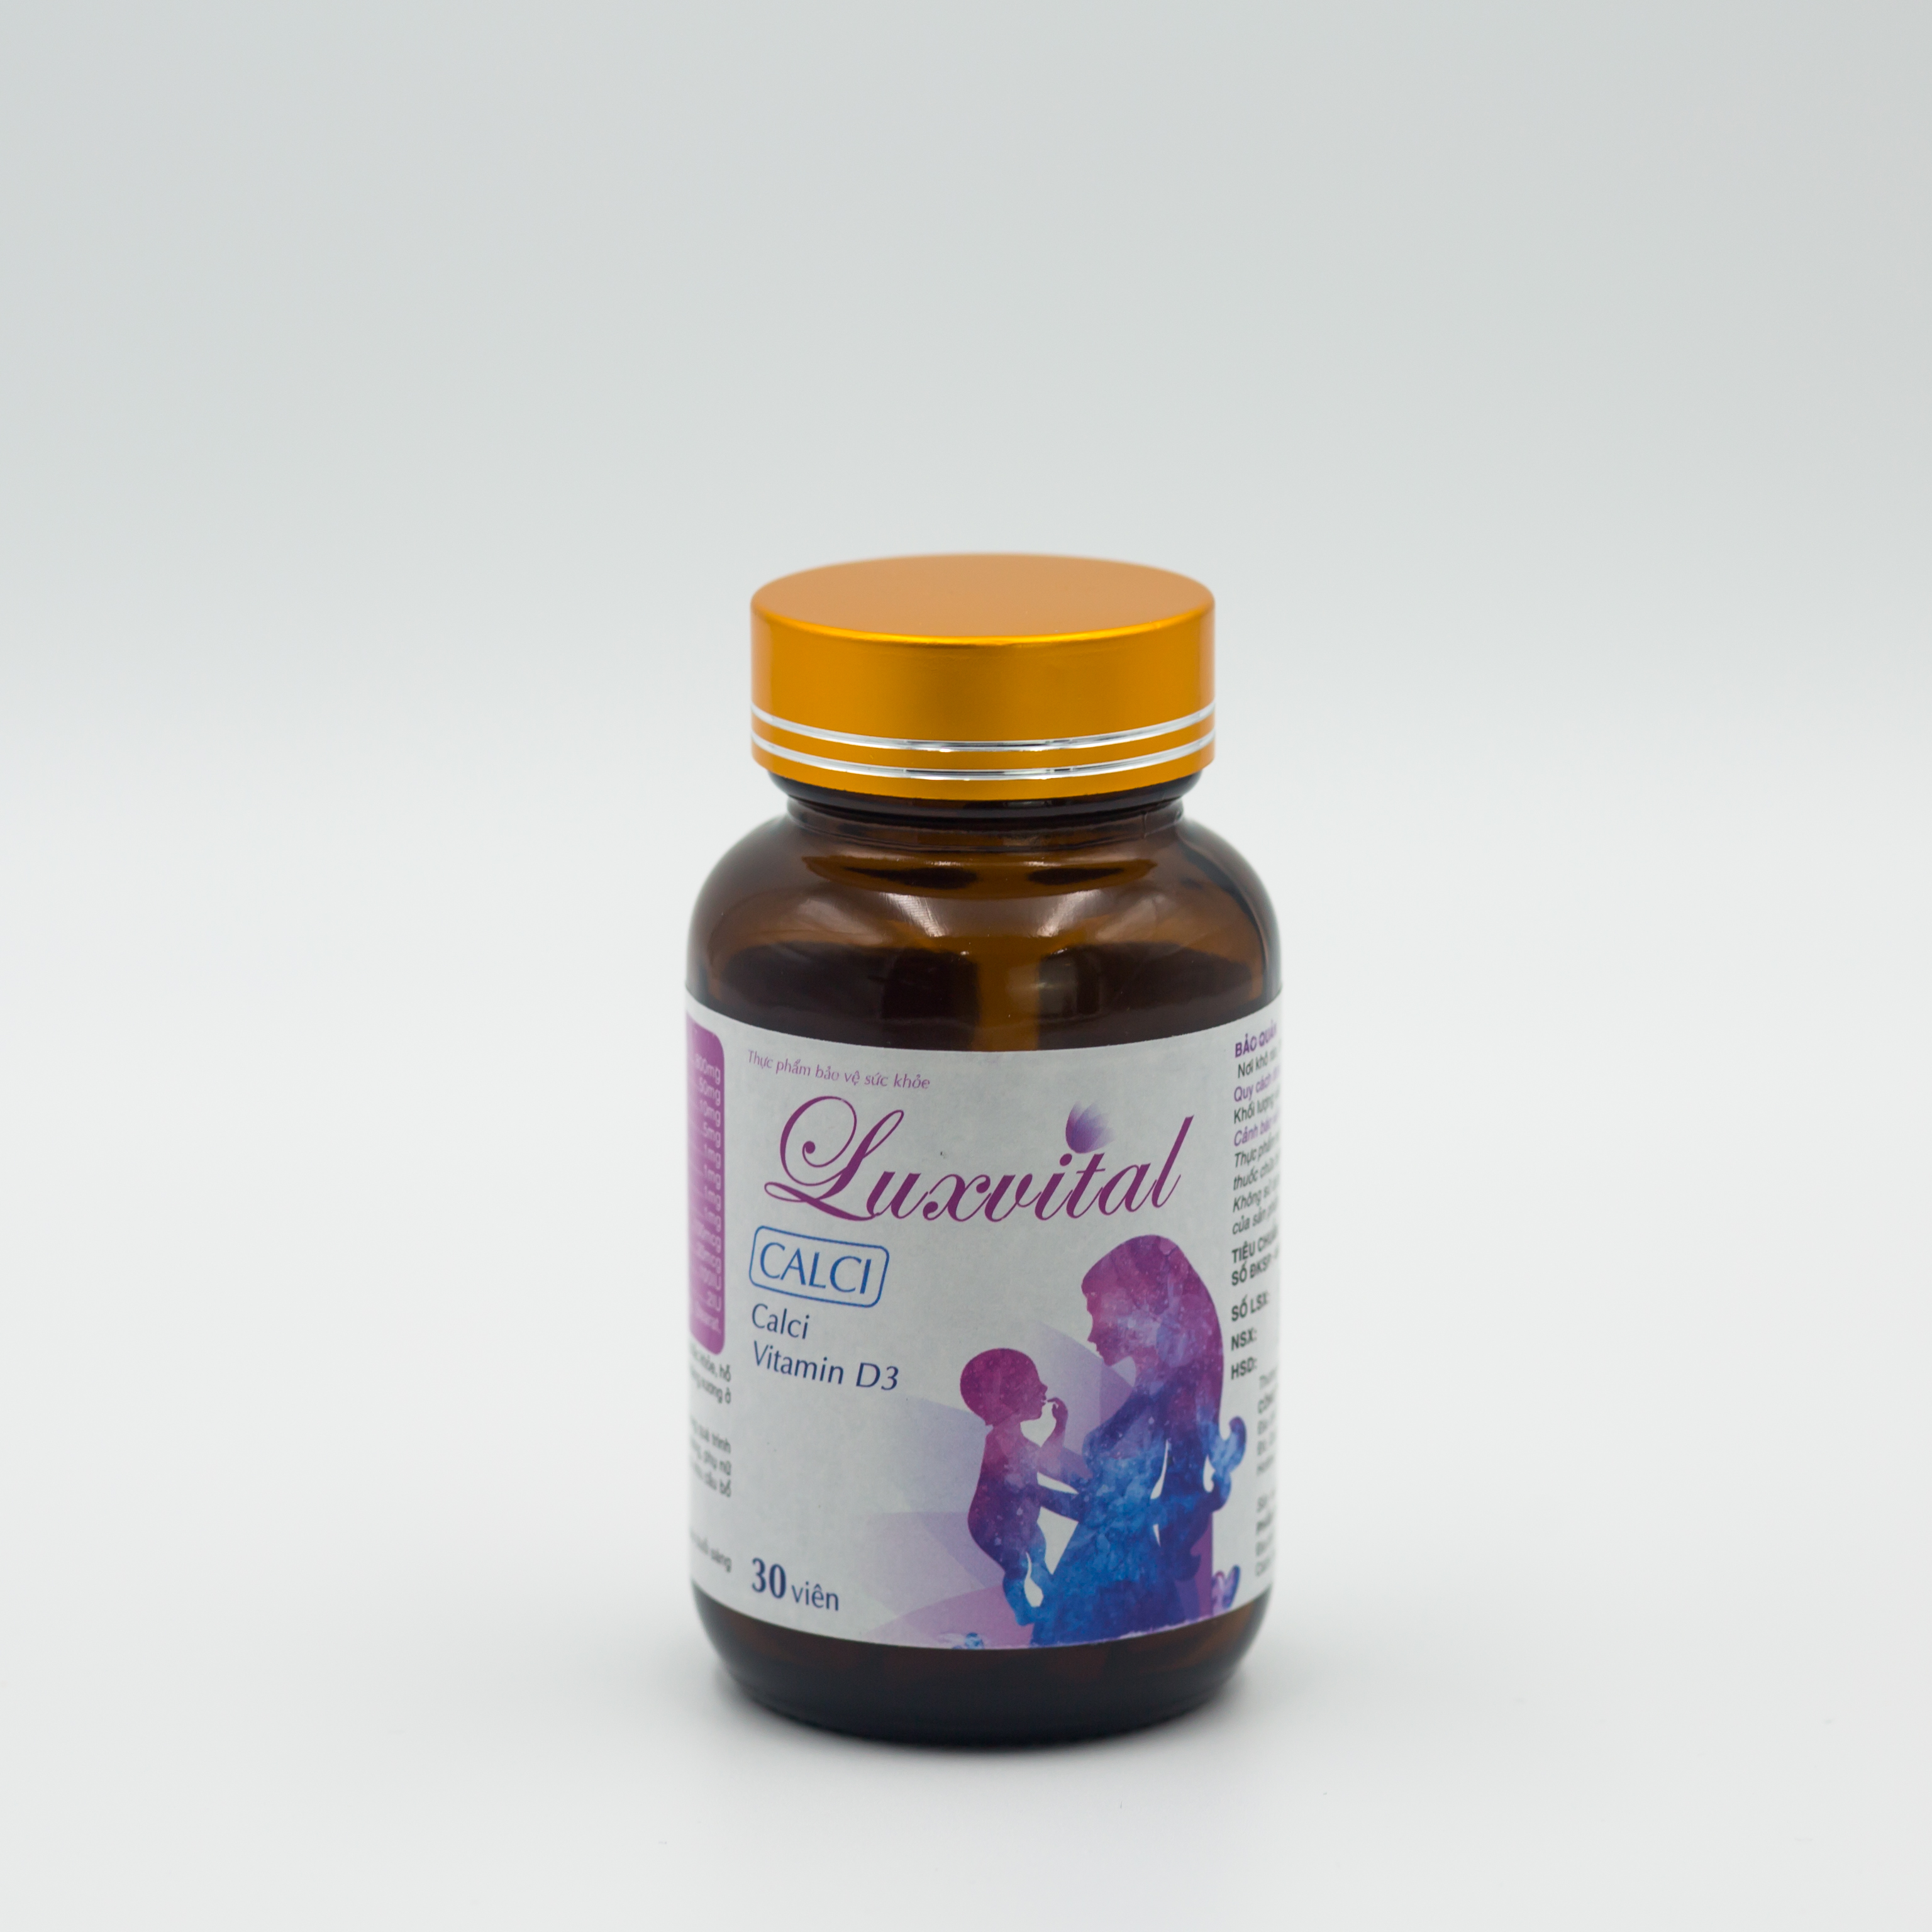 Thực phẩm chức năng Luxvital Calci bổ sung canxi cho mẹ bầu